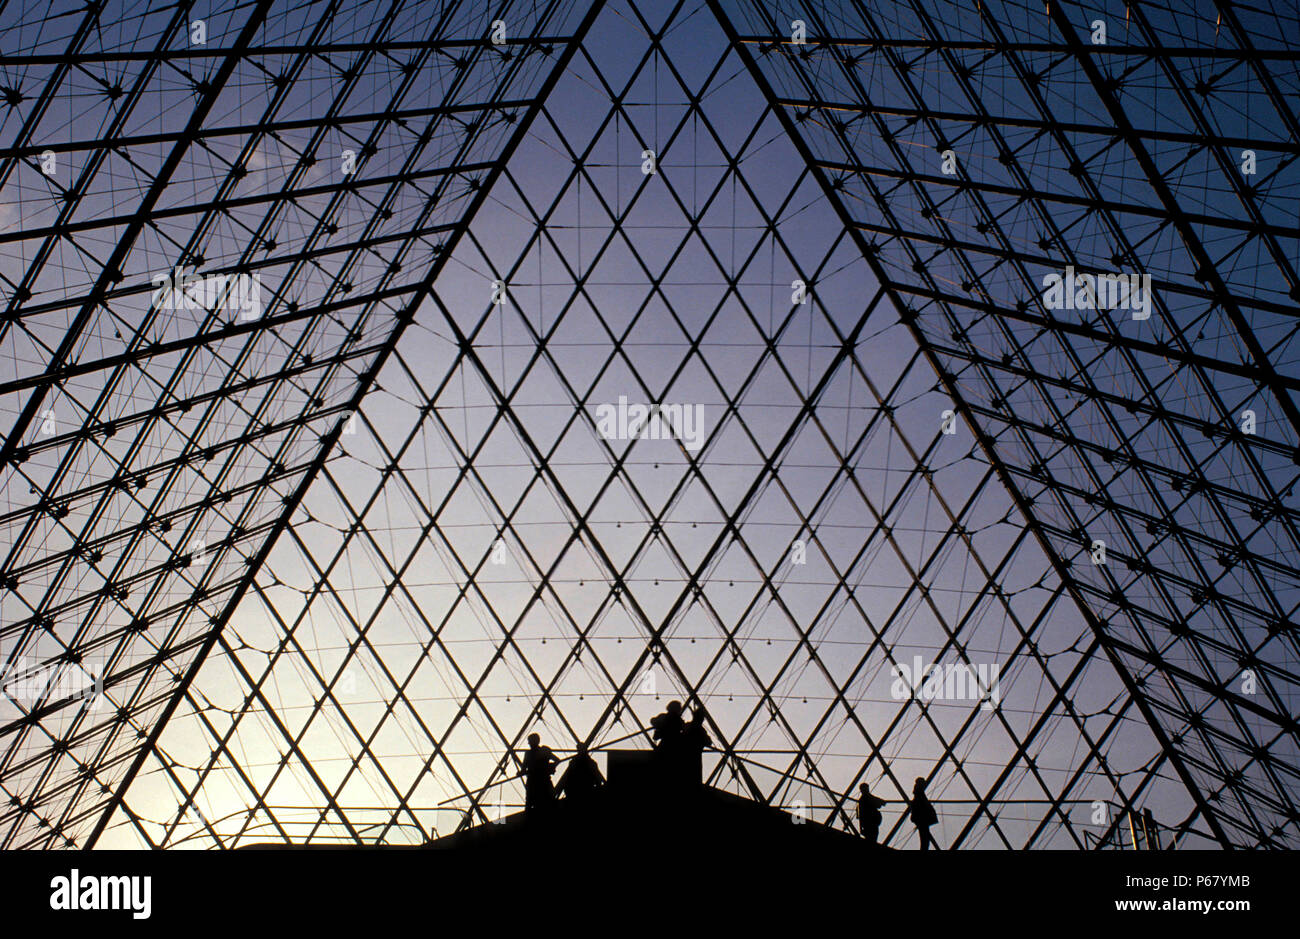 La piramide del Louvre. Parigi, Francia. Architetto: I.M Pei. Foto Stock